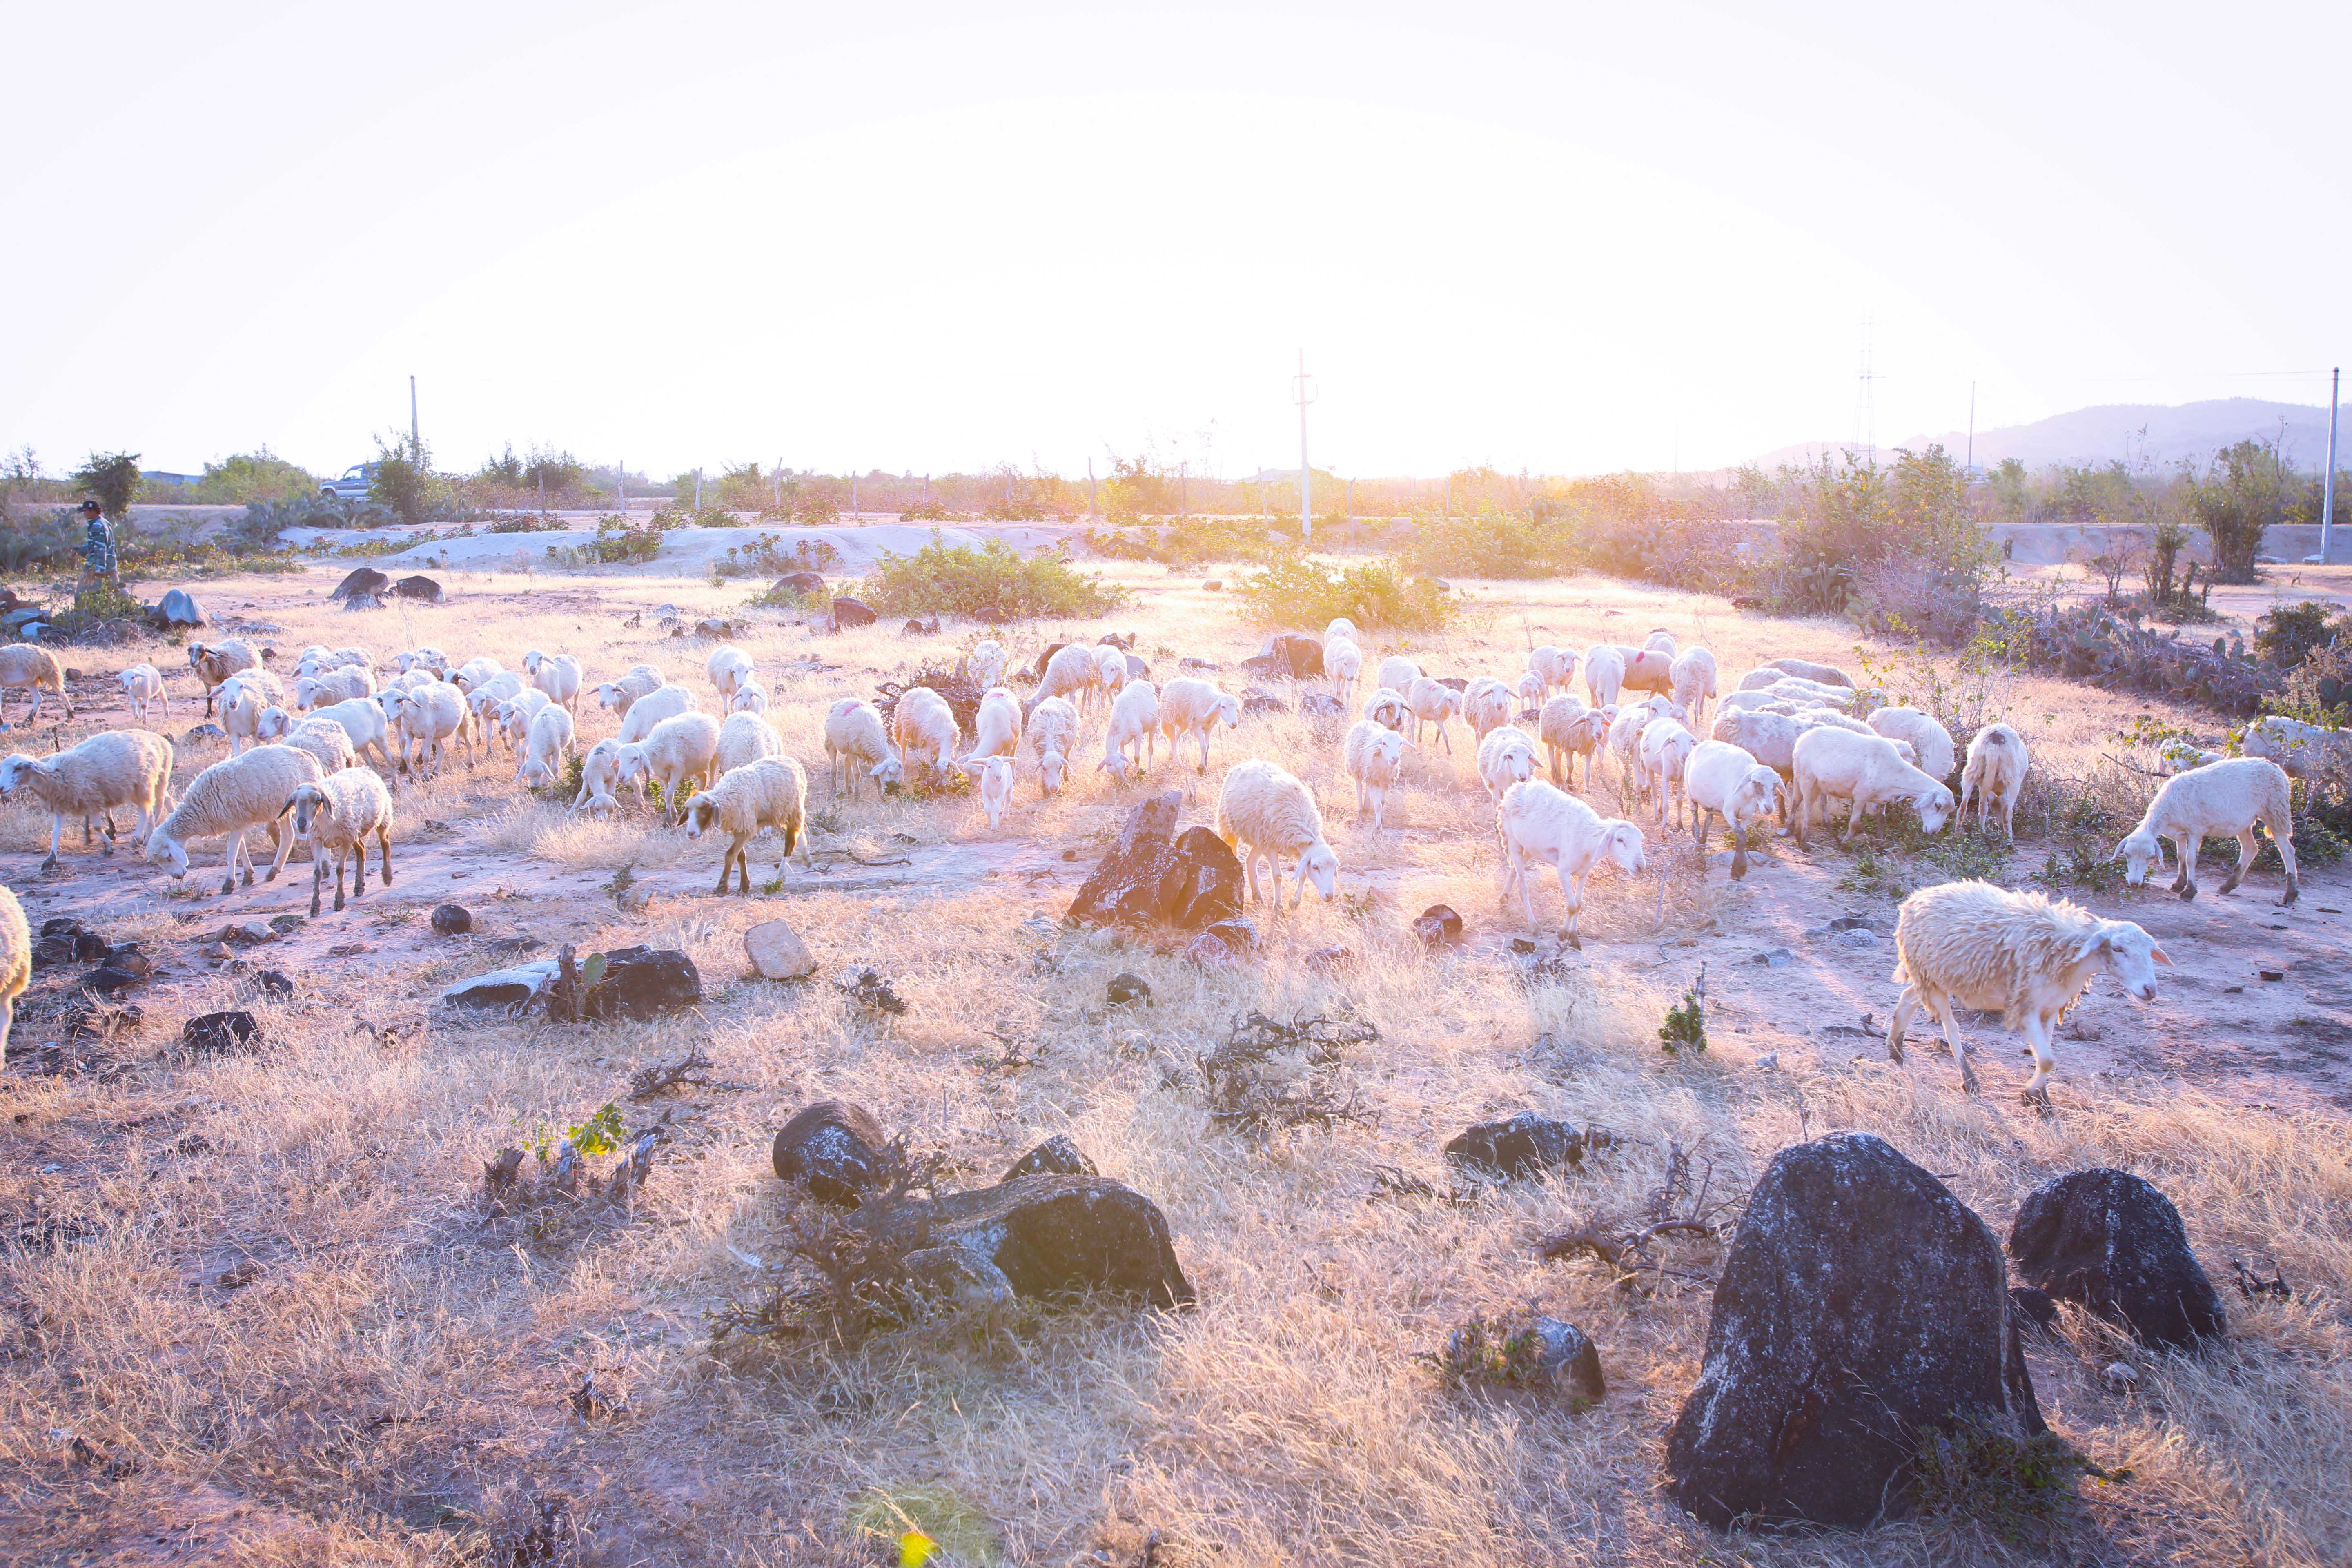 Khi nắng đã nhạt theo ánh mặt trời, đàn cừu vẫn thủng thẳng gặm những trảng cỏ còn sót lại sau những ngày hạn.